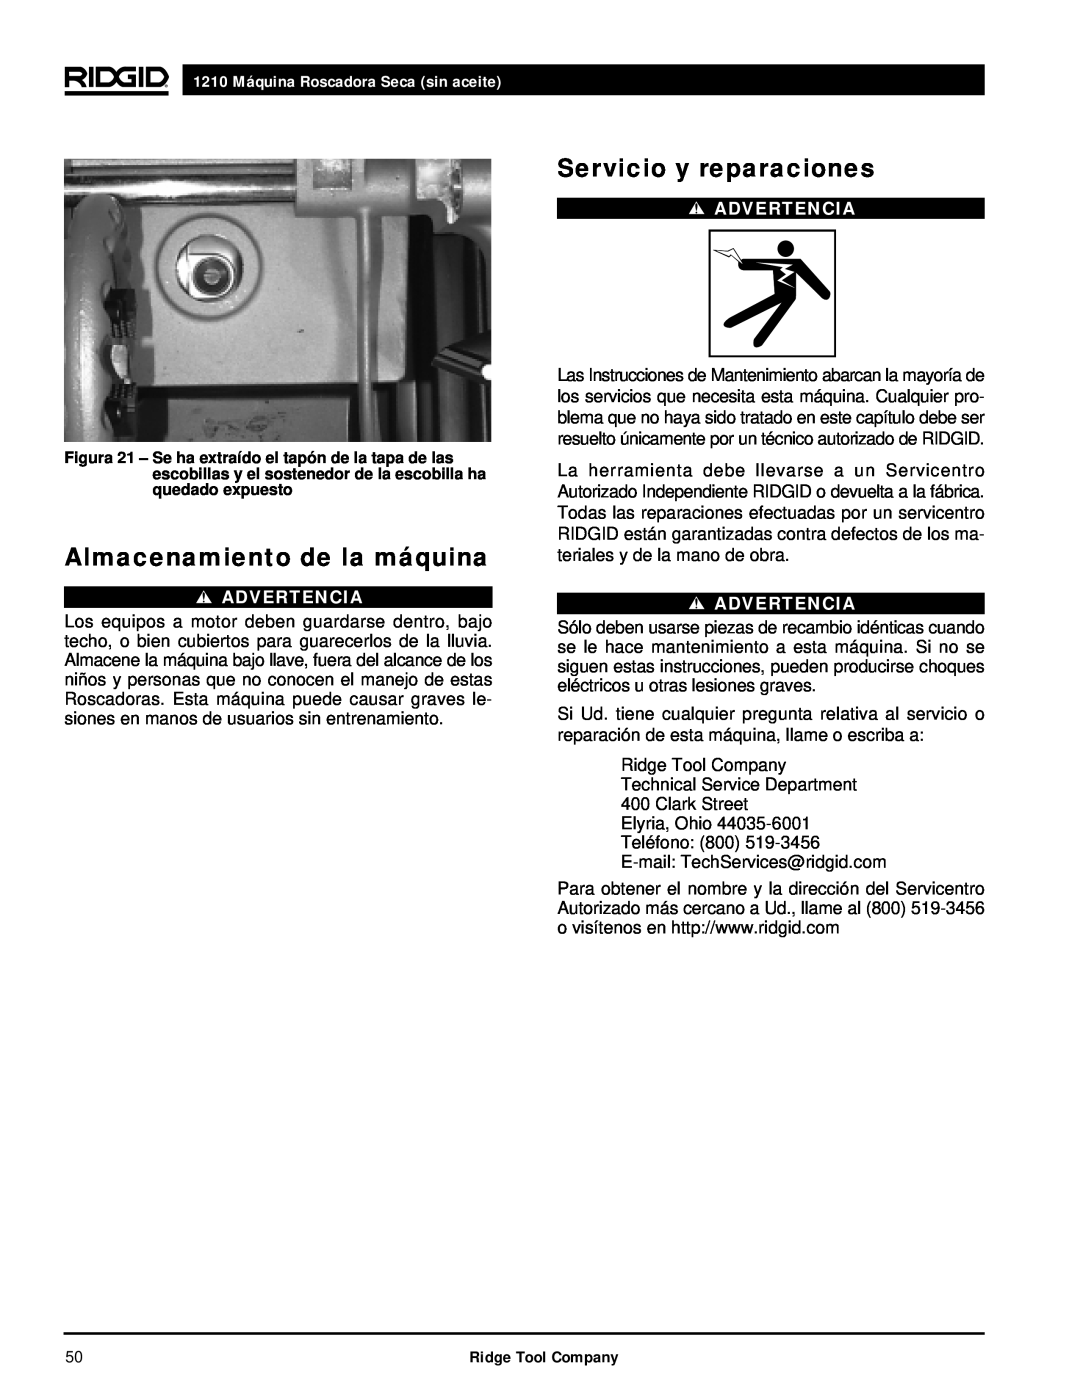 RIDGID manual Almacenamiento de la máquina, Servicio y reparaciones, 1210 Máquina Roscadora Seca sin aceite, Advertencia 